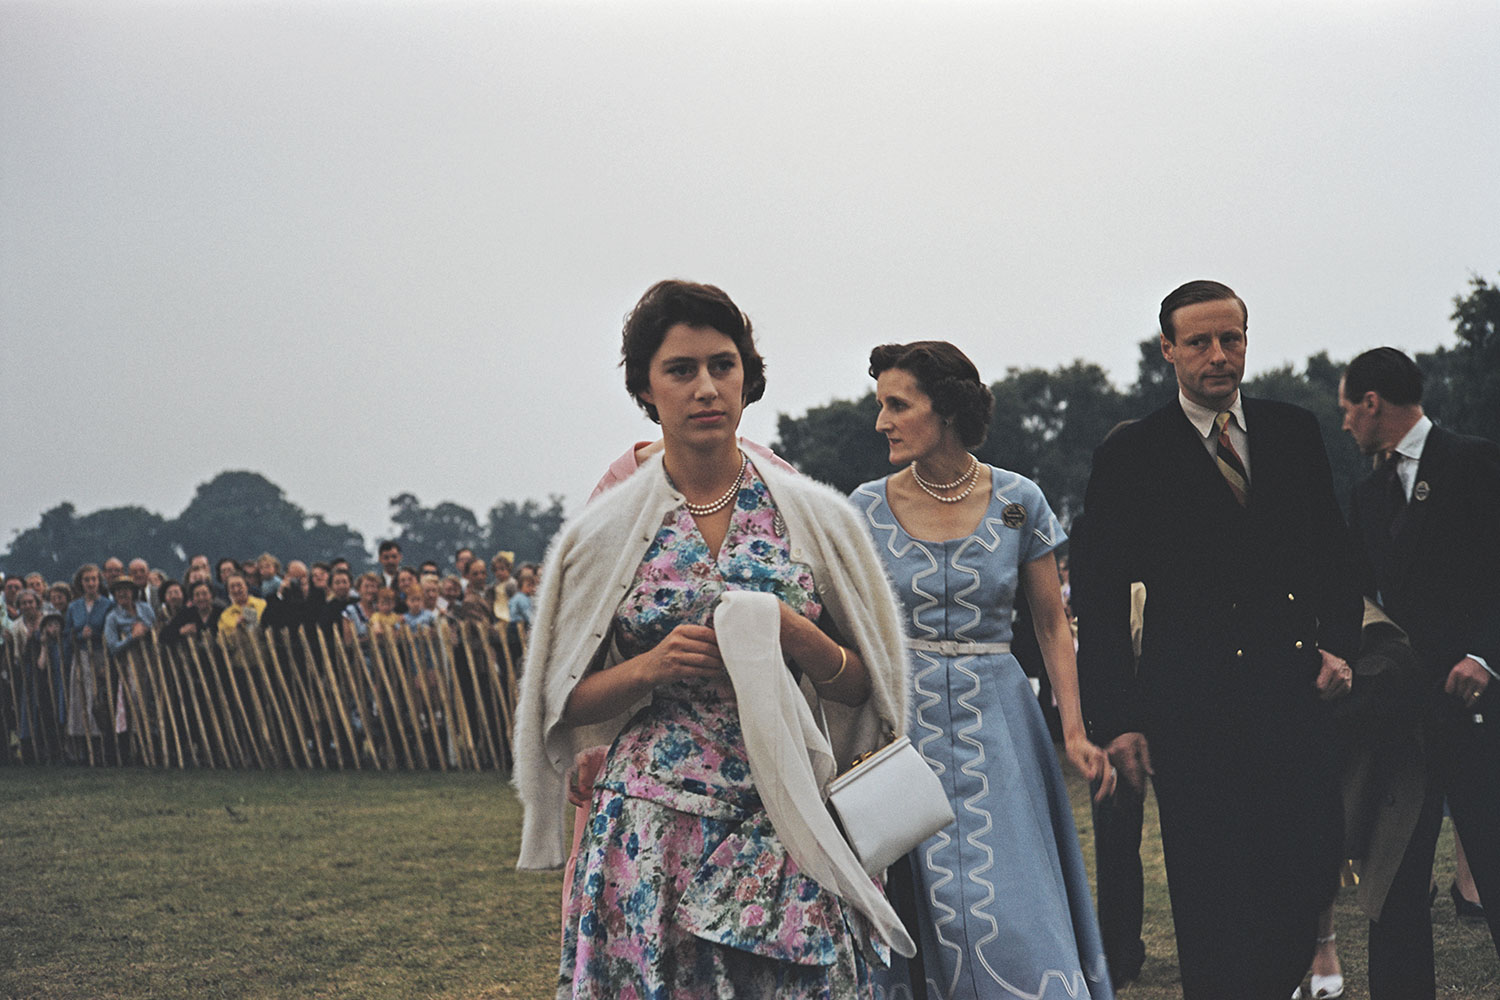 Princess Margaret at Great Windsor Park, 1955